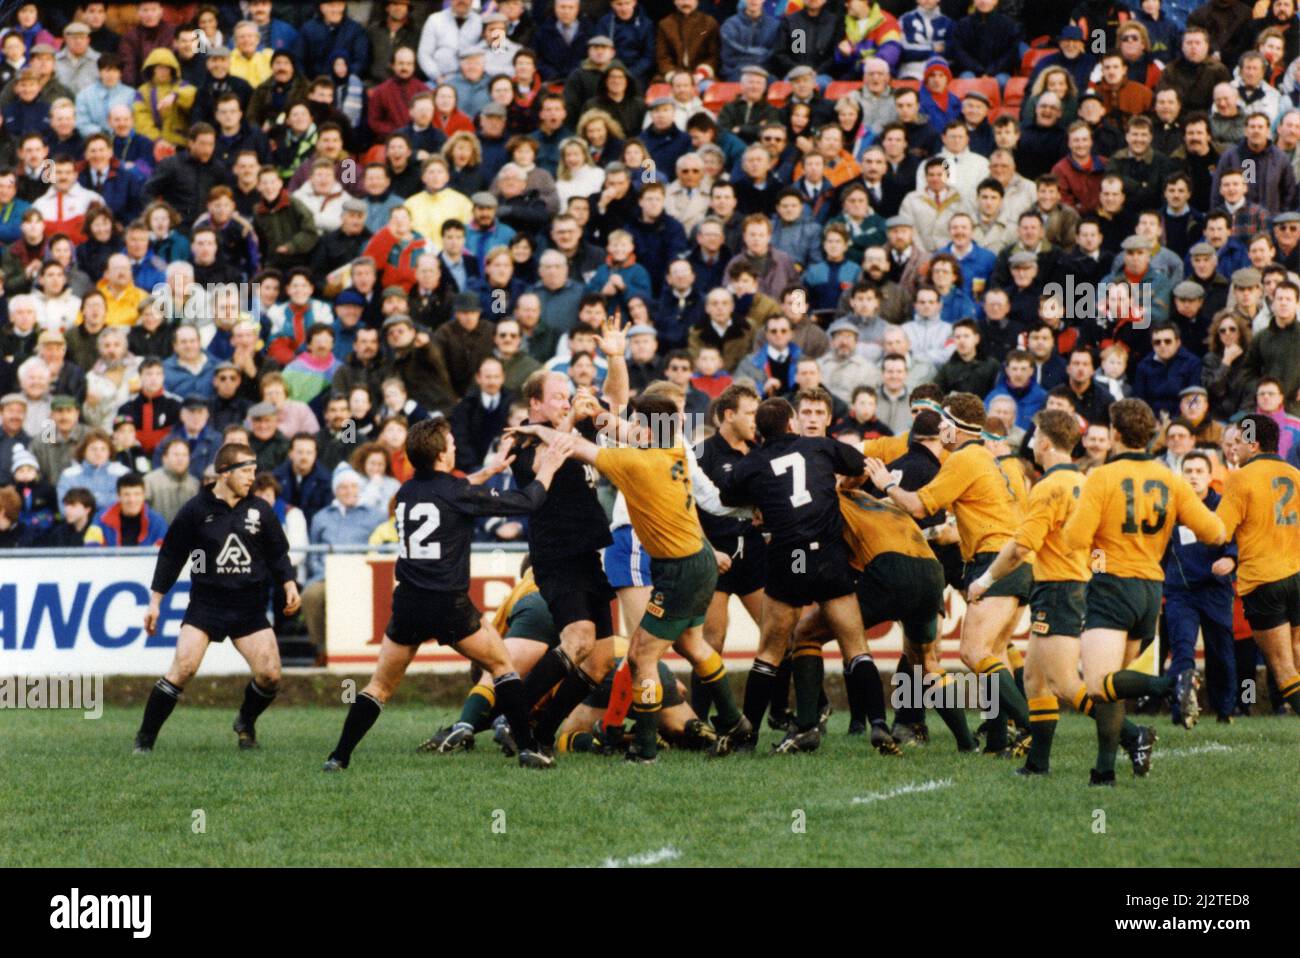 Neath 8-16 Australie, 1992 Australie tournée de rugby en Europe, alias Wallabies Spring tour, match à Gnoll, Neath, pays de Galles, mercredi 11th novembre 1992. Banque D'Images